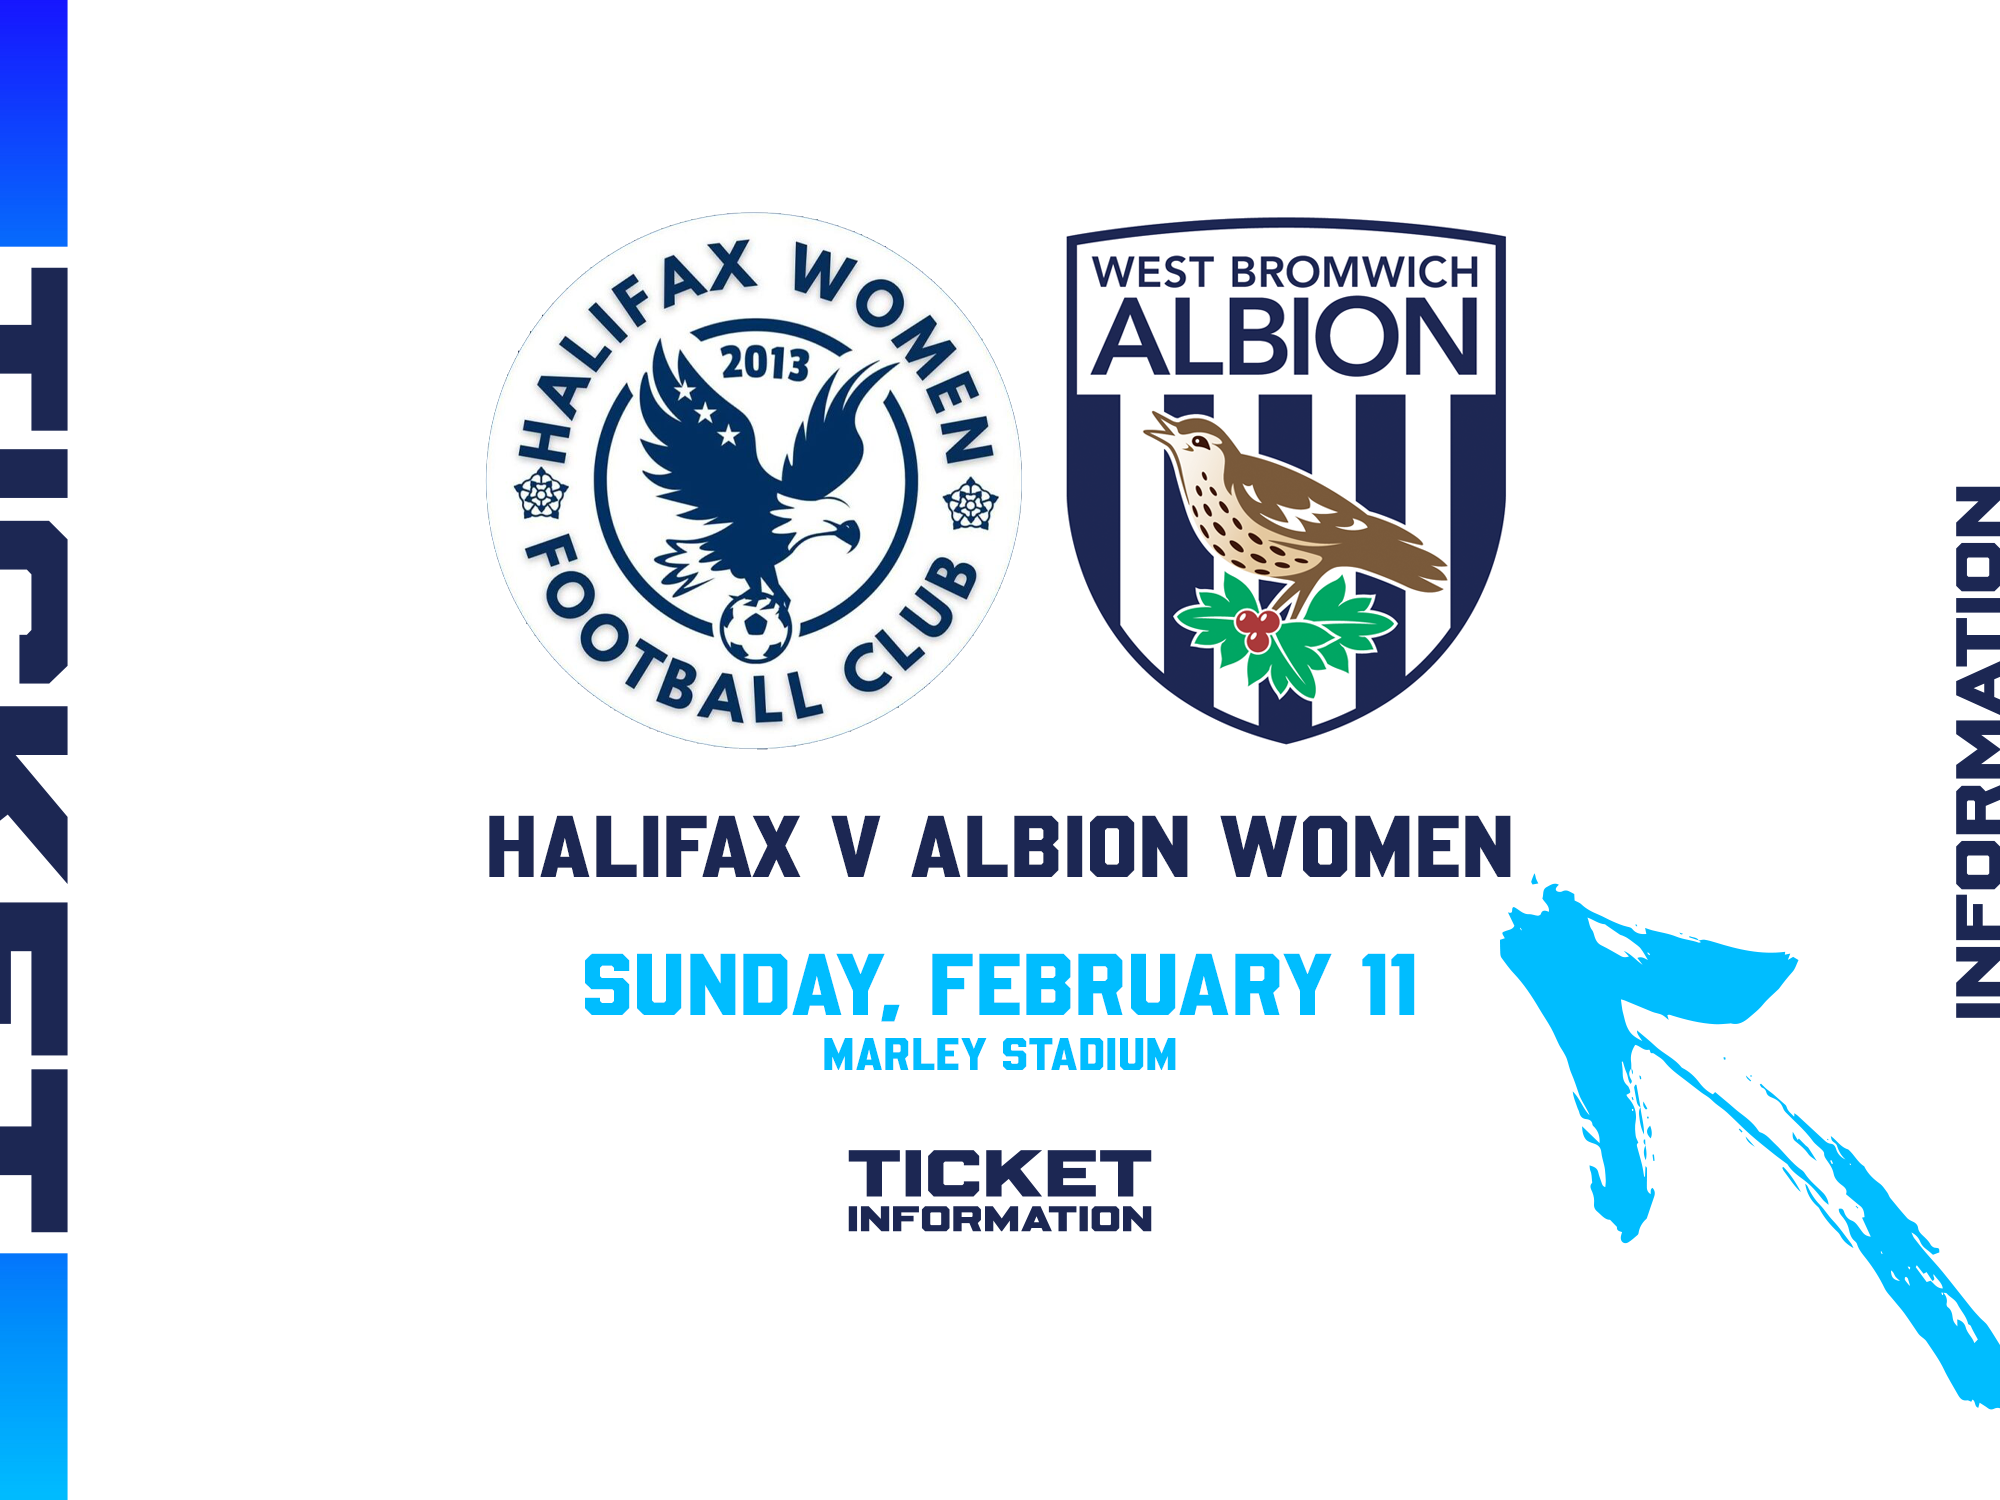 Halifax v Albion Women ticket information